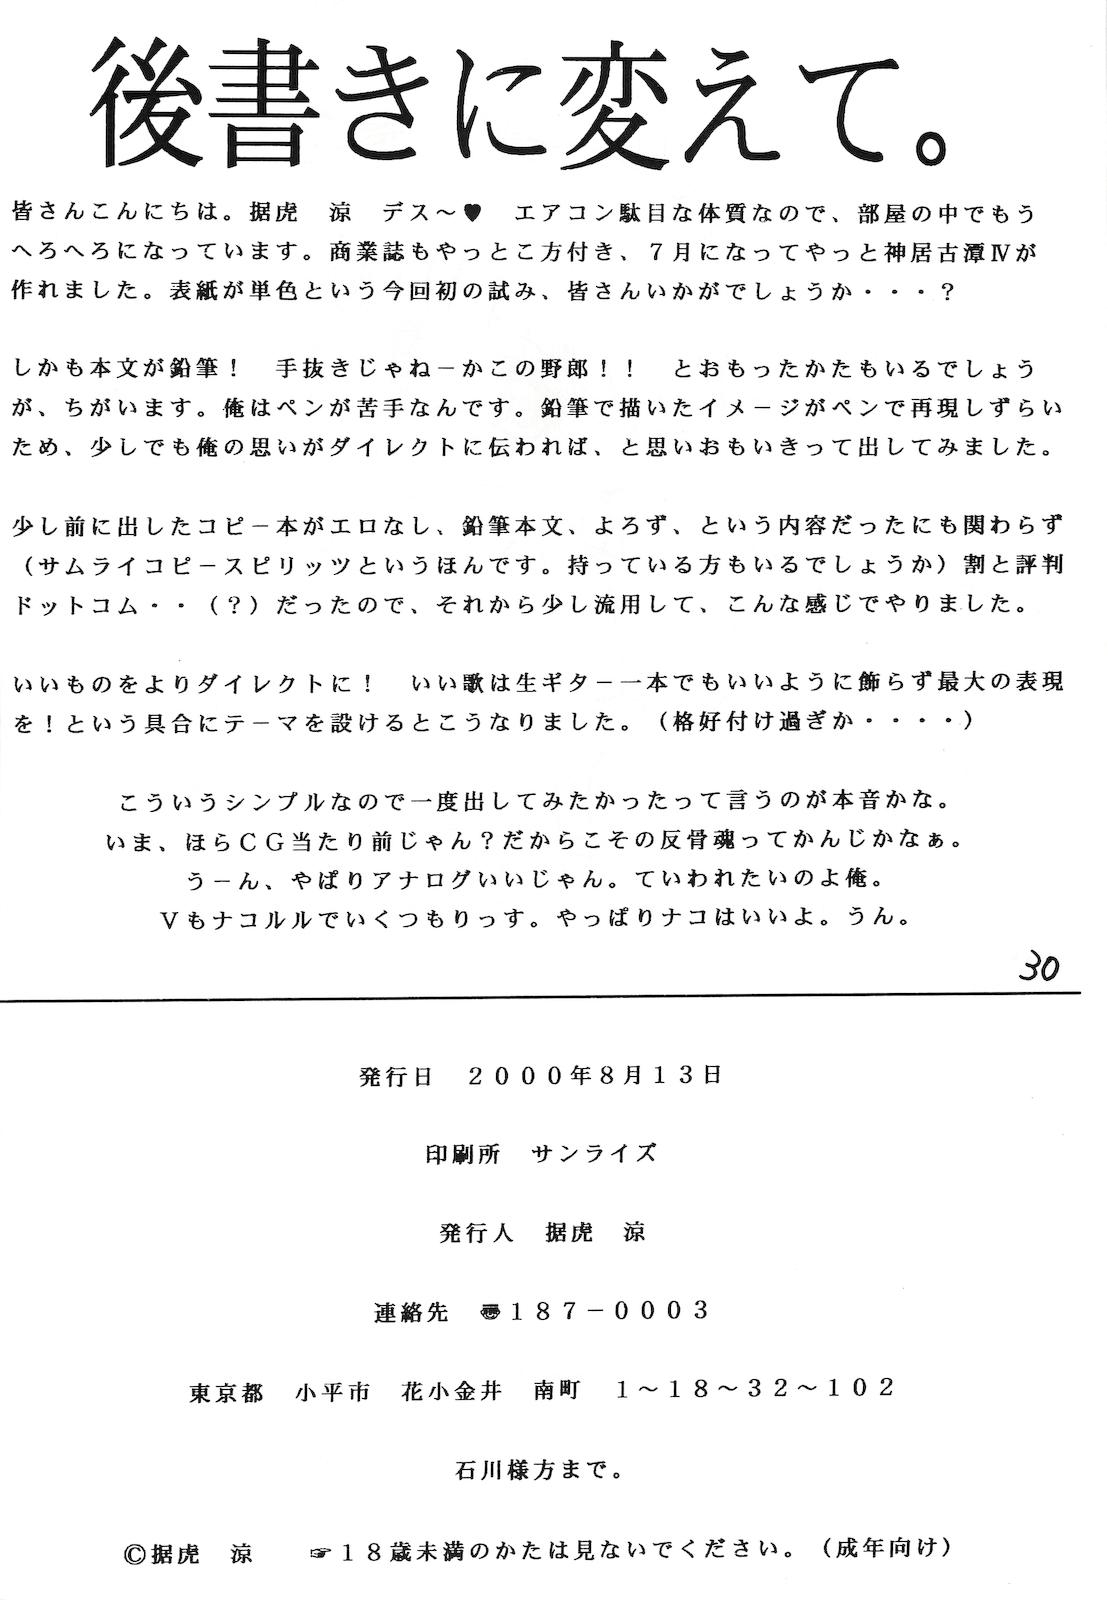 Fodendo Kamui Kotan IV - Samurai spirits Girlfriends - Page 29